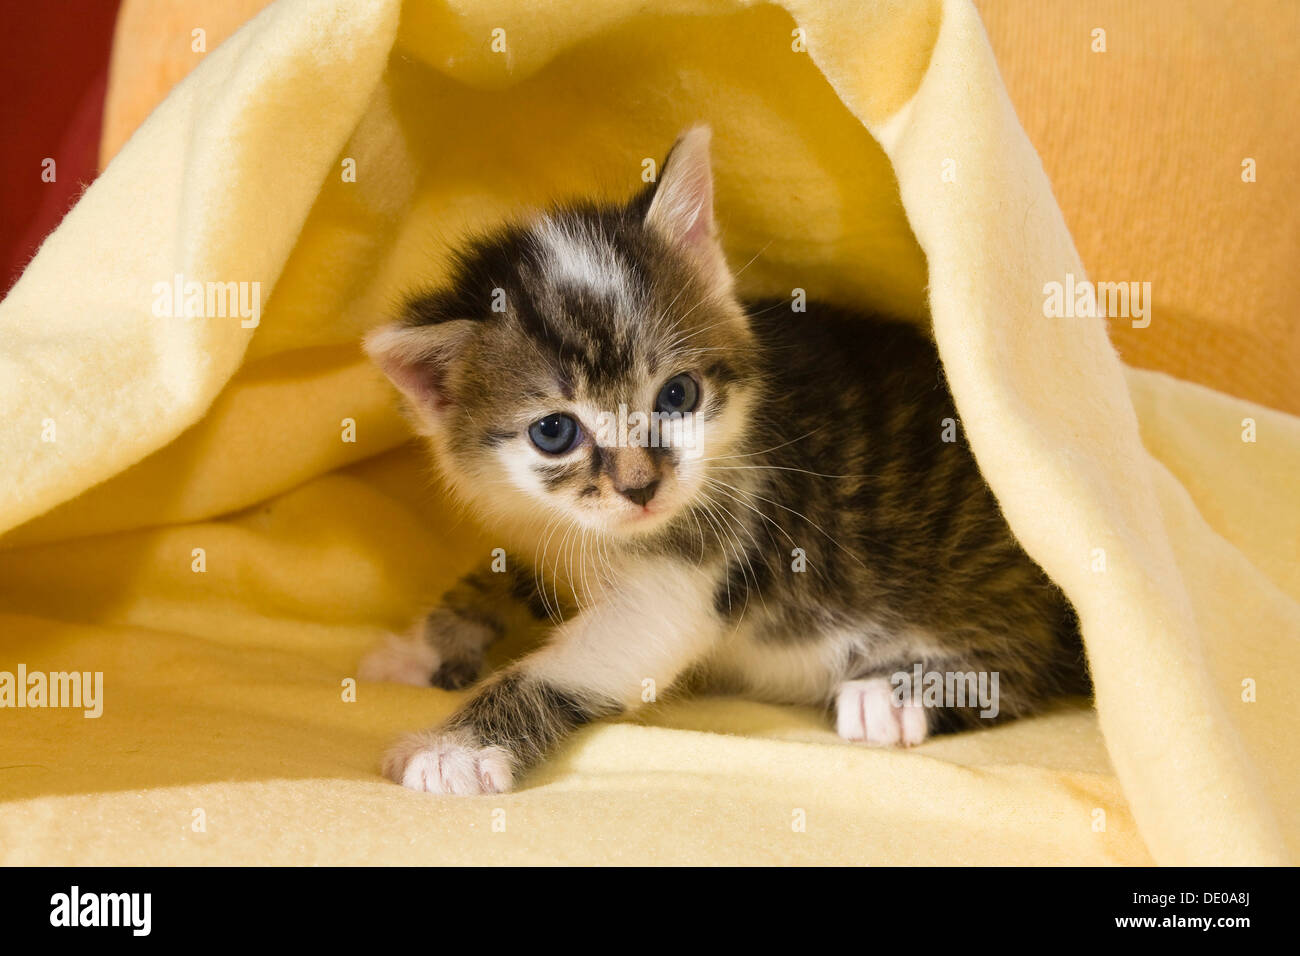 Kitten under a blanket Stock Photo